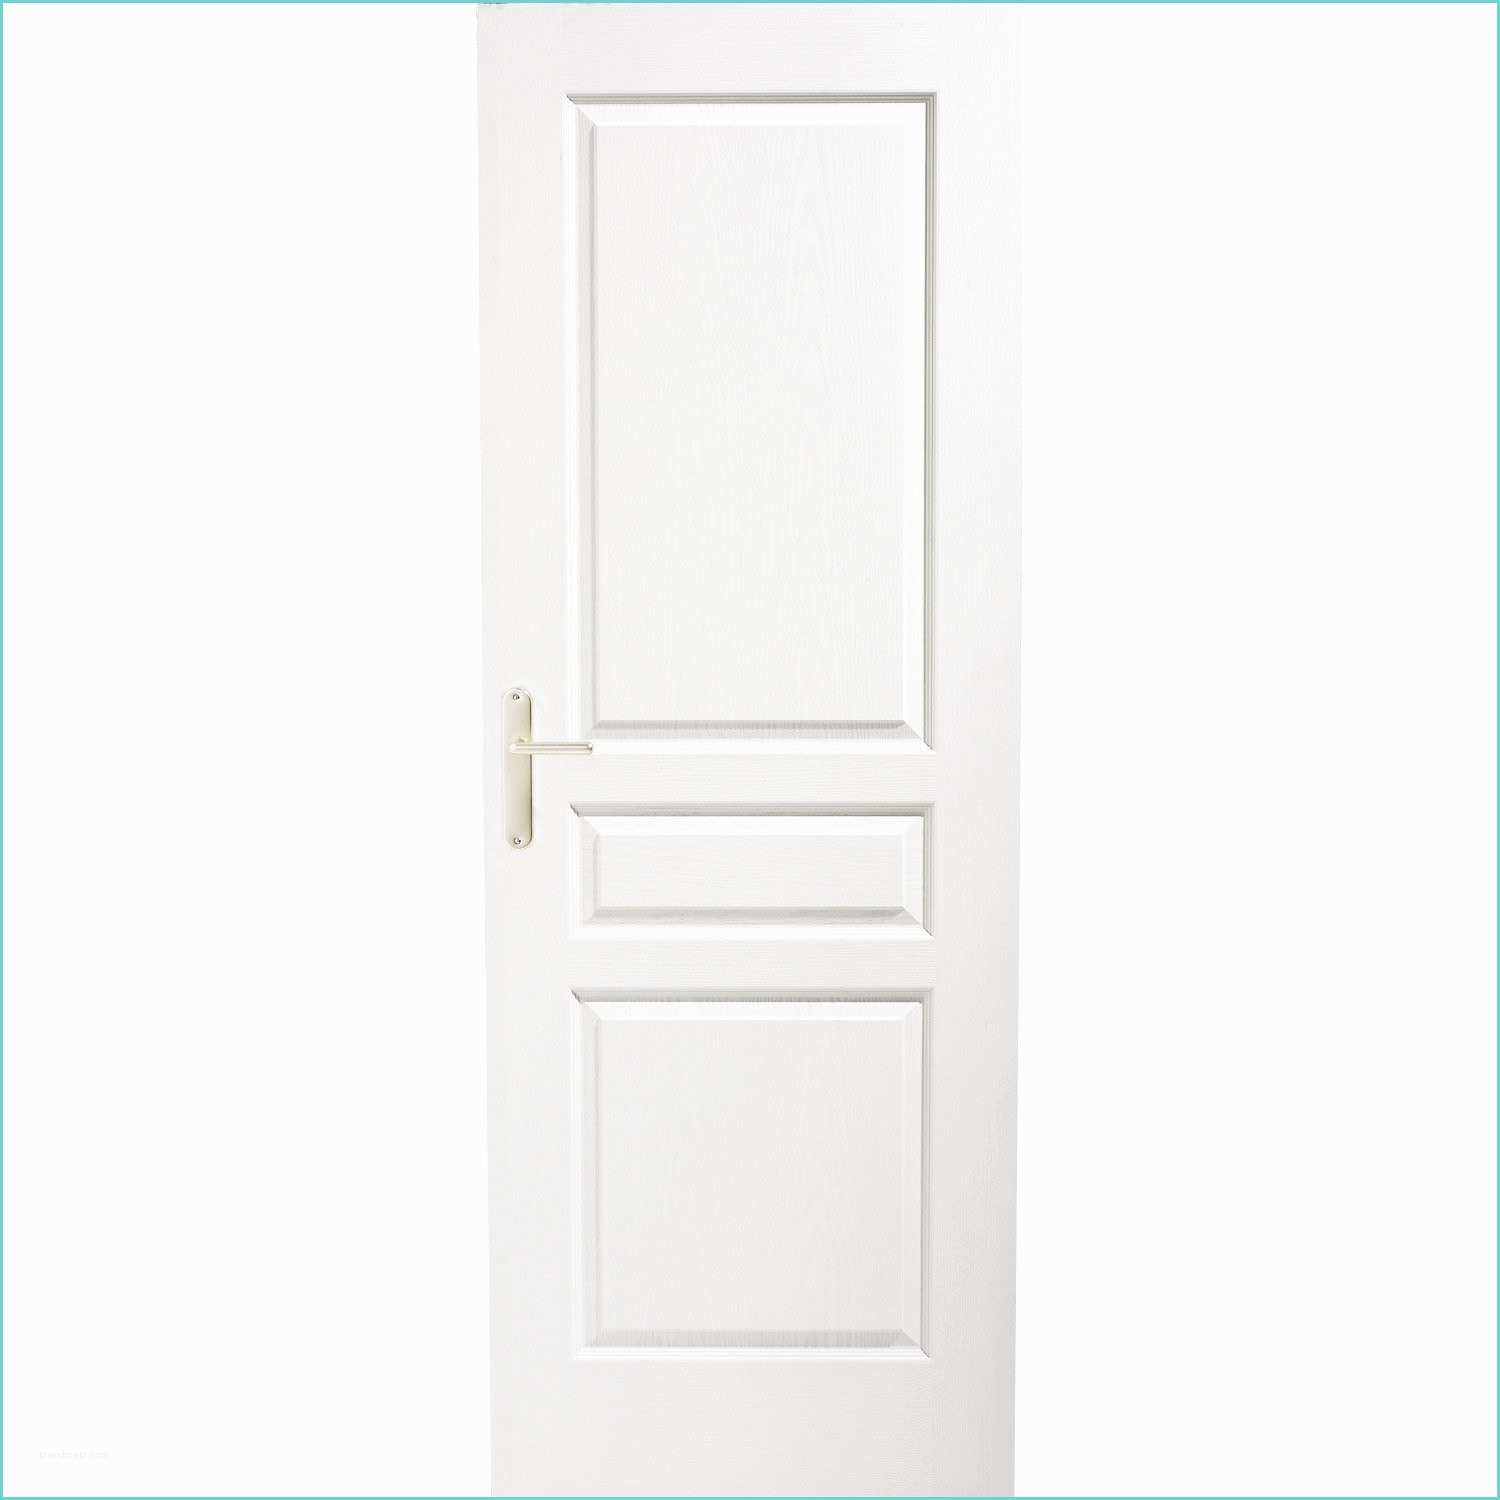 Леруа дверь со стеклом. Дверь hd161 цв белый матовый ДГ 2.0 0.6. Дв. Полотно ДГ 800 РSВ-28 Baguette PVC пломбир (profilo porte). Дверное полотно Галактика (эмаль грей) 700х2000. Межкомнатная дверь Скай-1 белая эмаль ДГ.